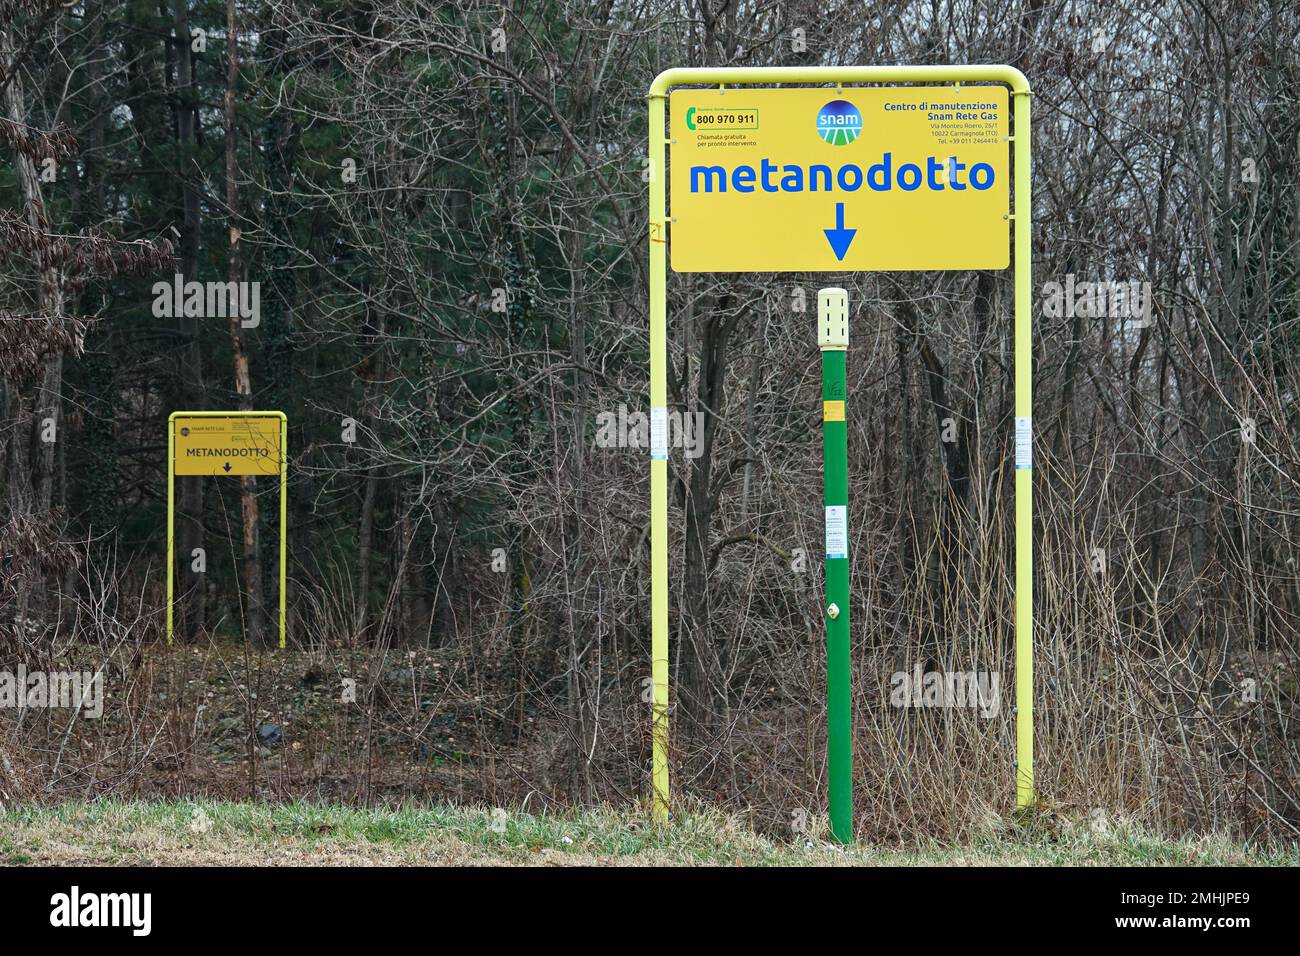 Signalisation indiquant la présence d'une ligne de distribution de méthane. Condove, Italie - janvier 2023 Banque D'Images